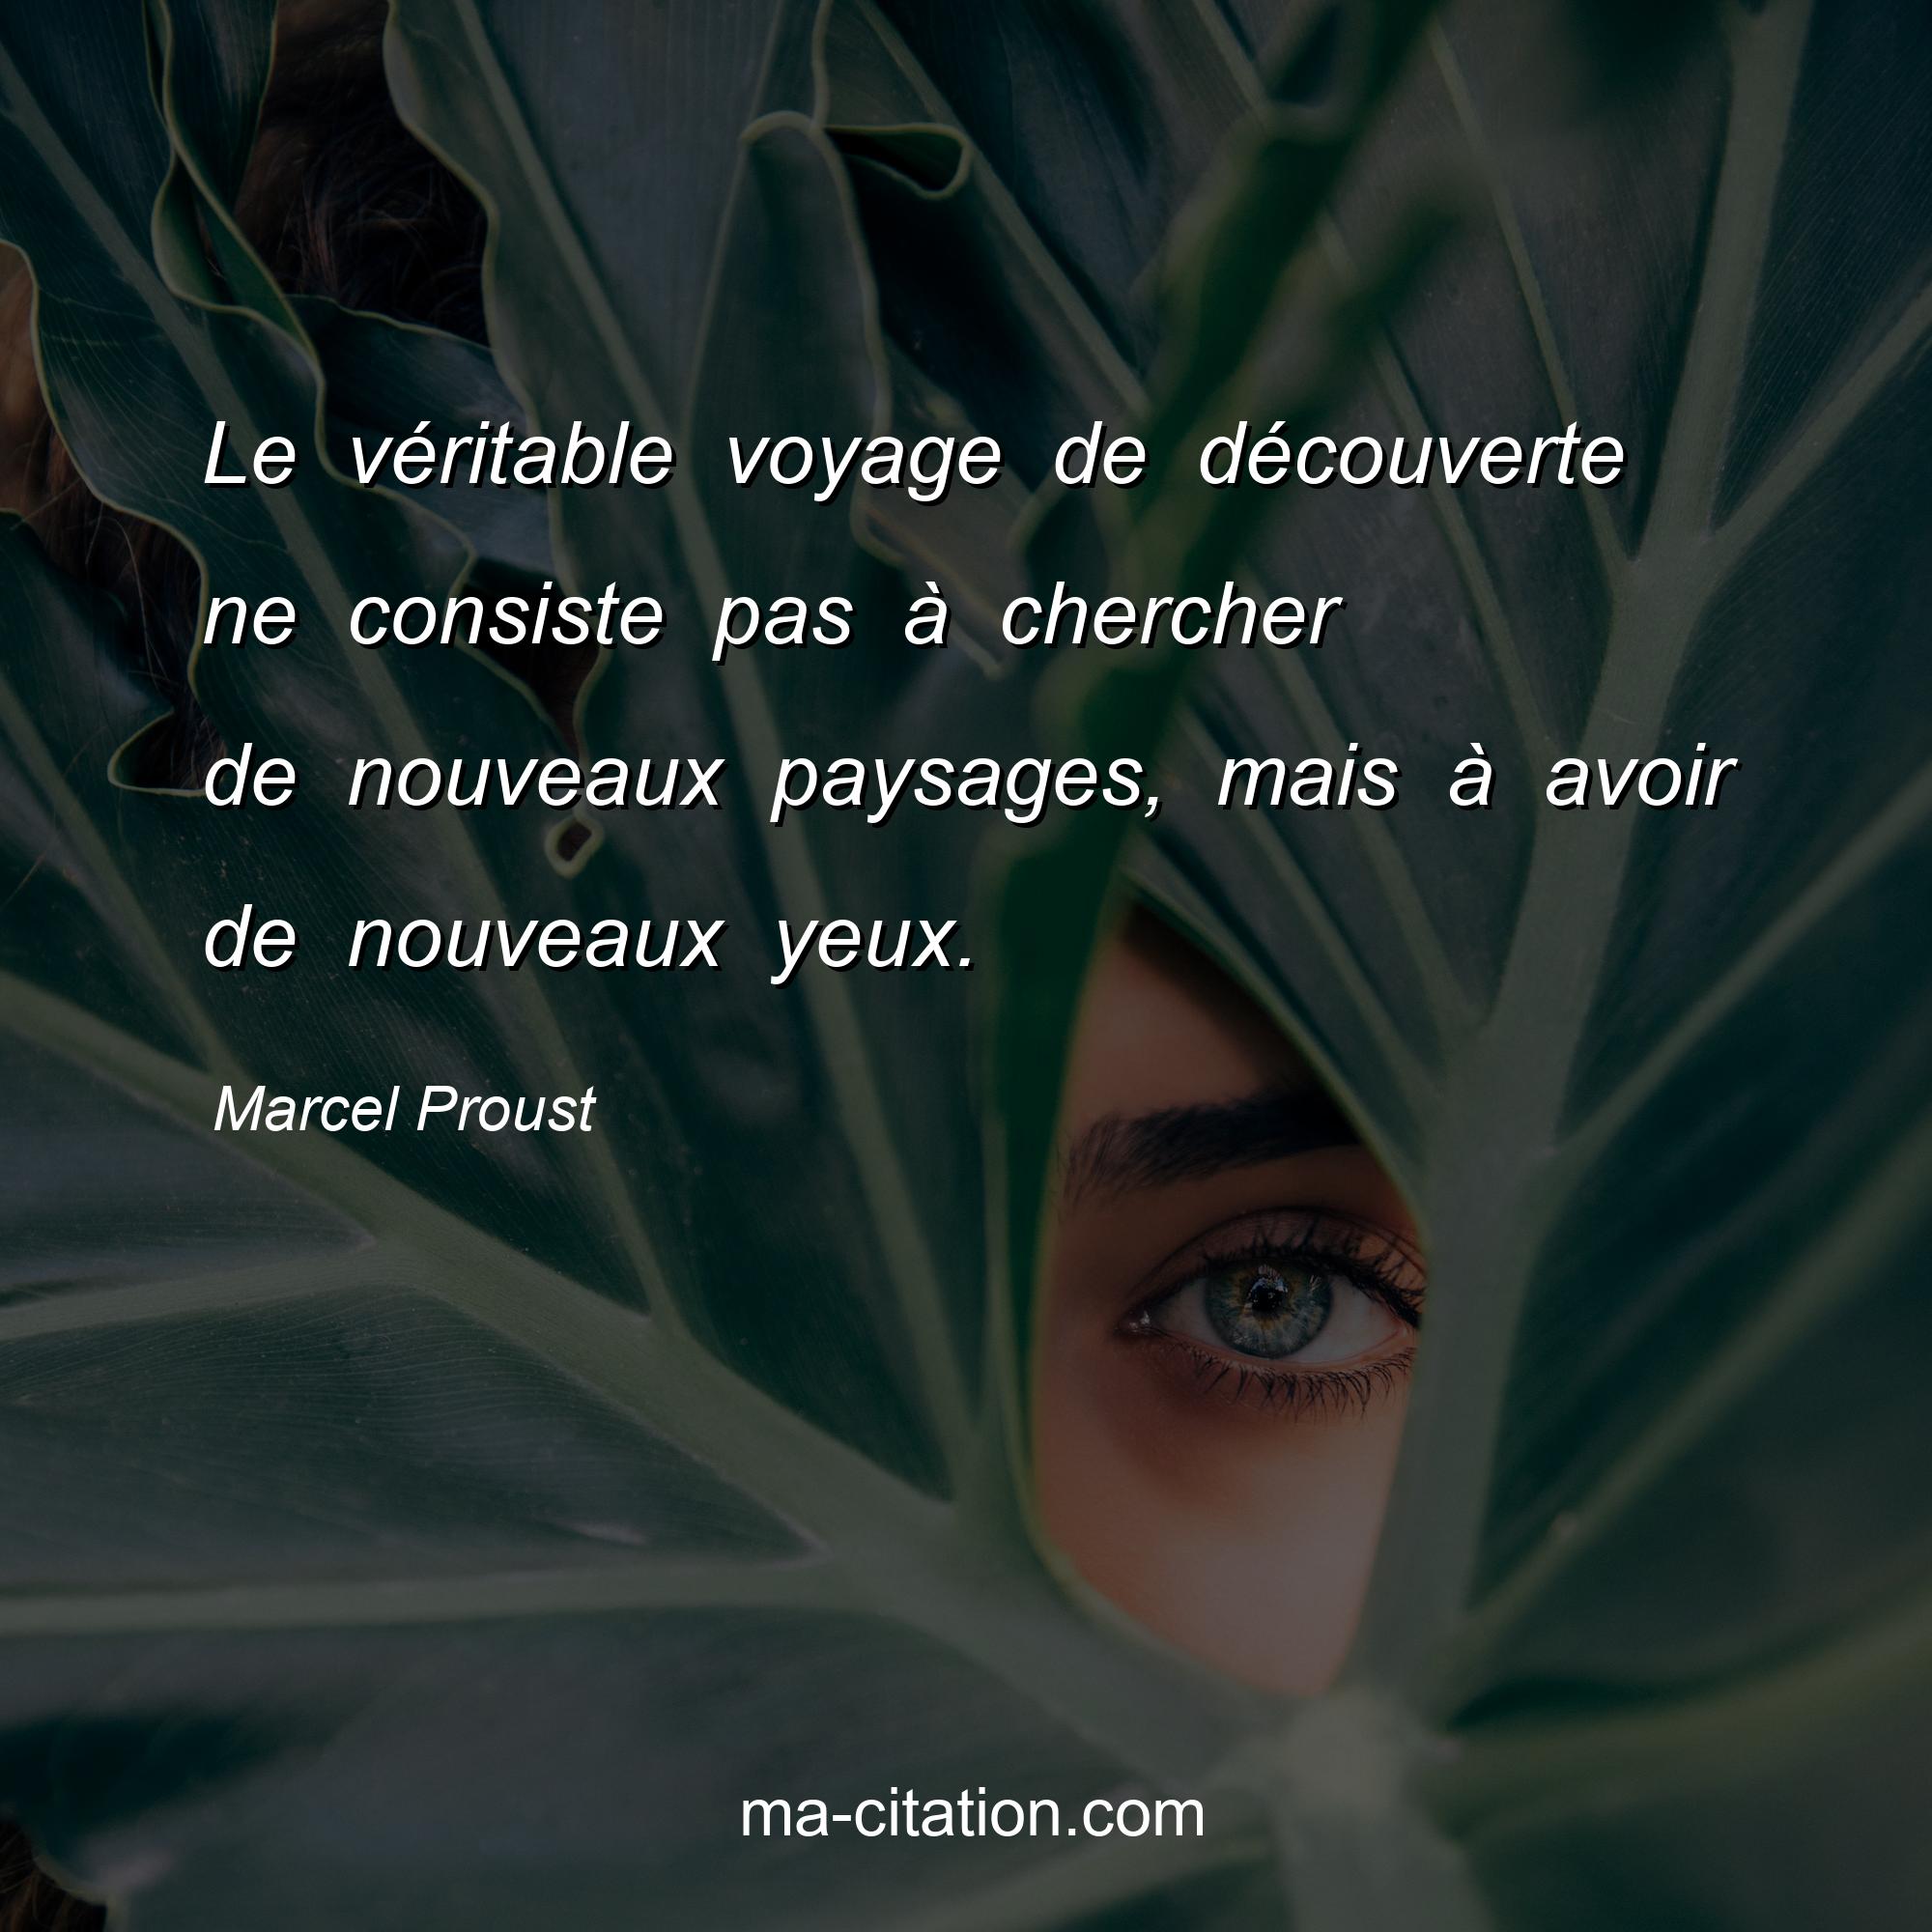 Marcel Proust : Le véritable voyage de découverte ne consiste pas à chercher de nouveaux paysages, mais à avoir de nouveaux yeux.